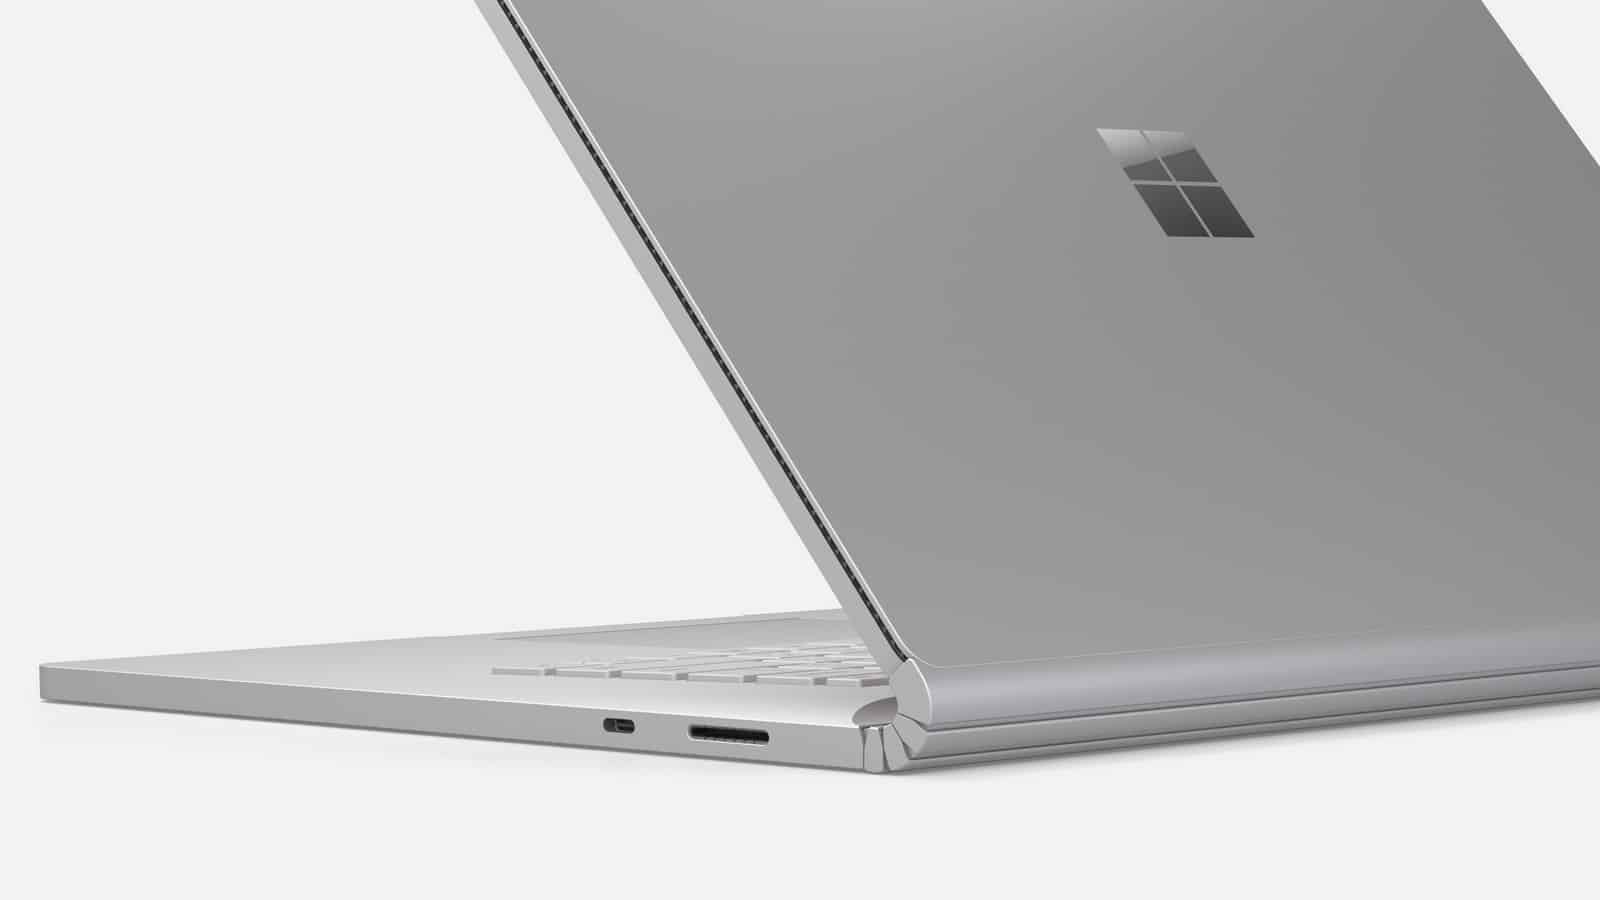 Surface Book 3 resmiyet kazandı: Tanıdık tasarım, daha güçlü ve yeni bileşenler